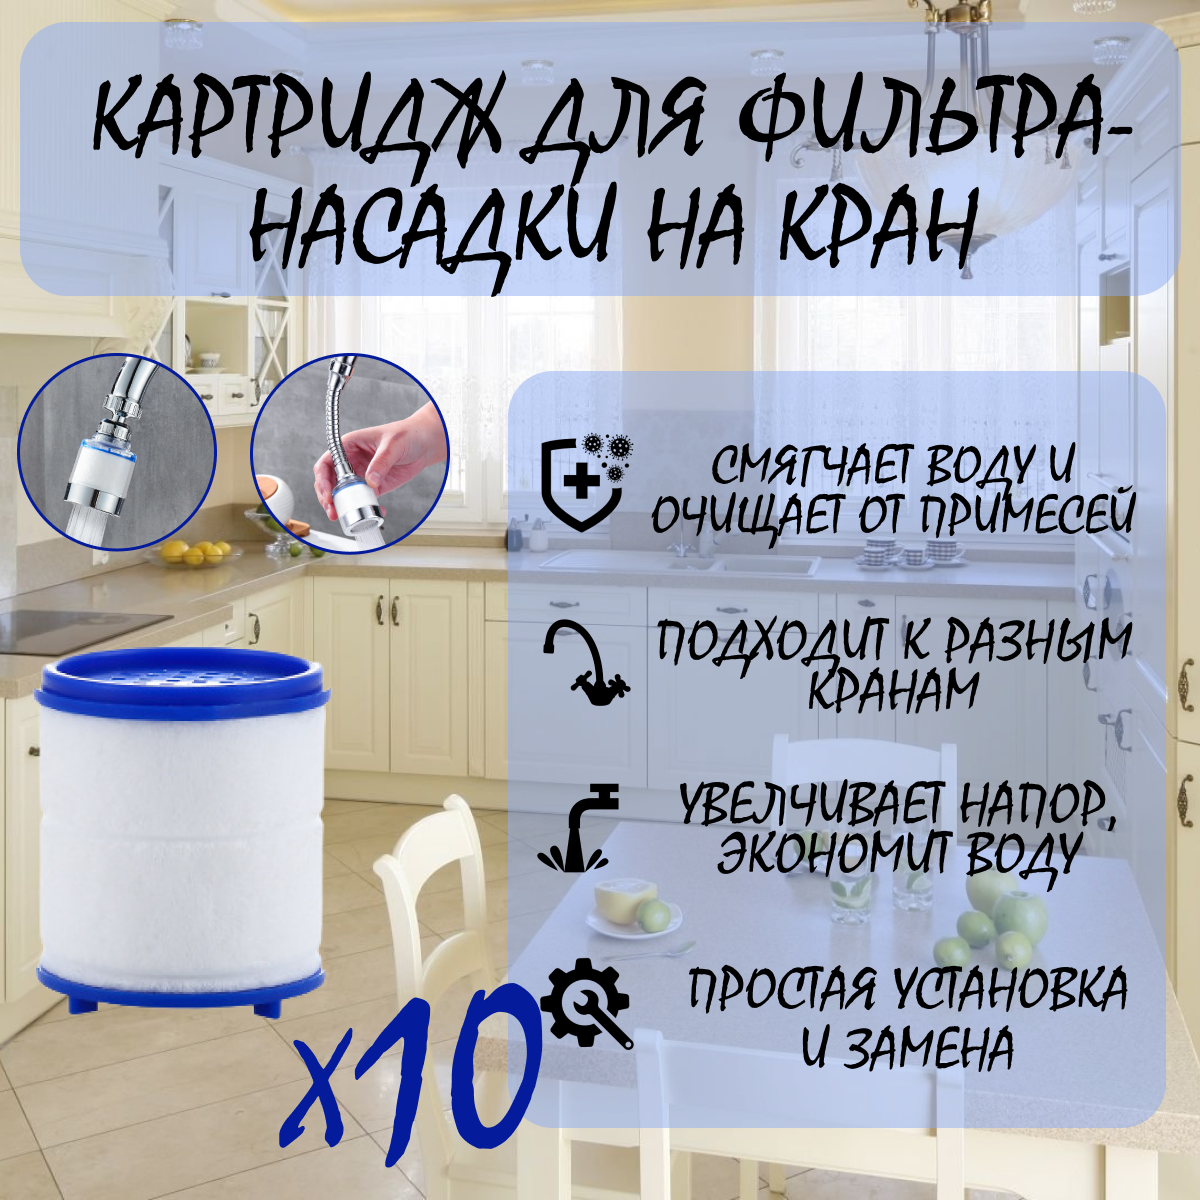 Картридж для Фильтра-насадки на кран , очищает воду от ржавчины, вредных примесей и умягчает, комплект 10 шт. — купить в интернет-магазине по низкой цене на Яндекс Маркете